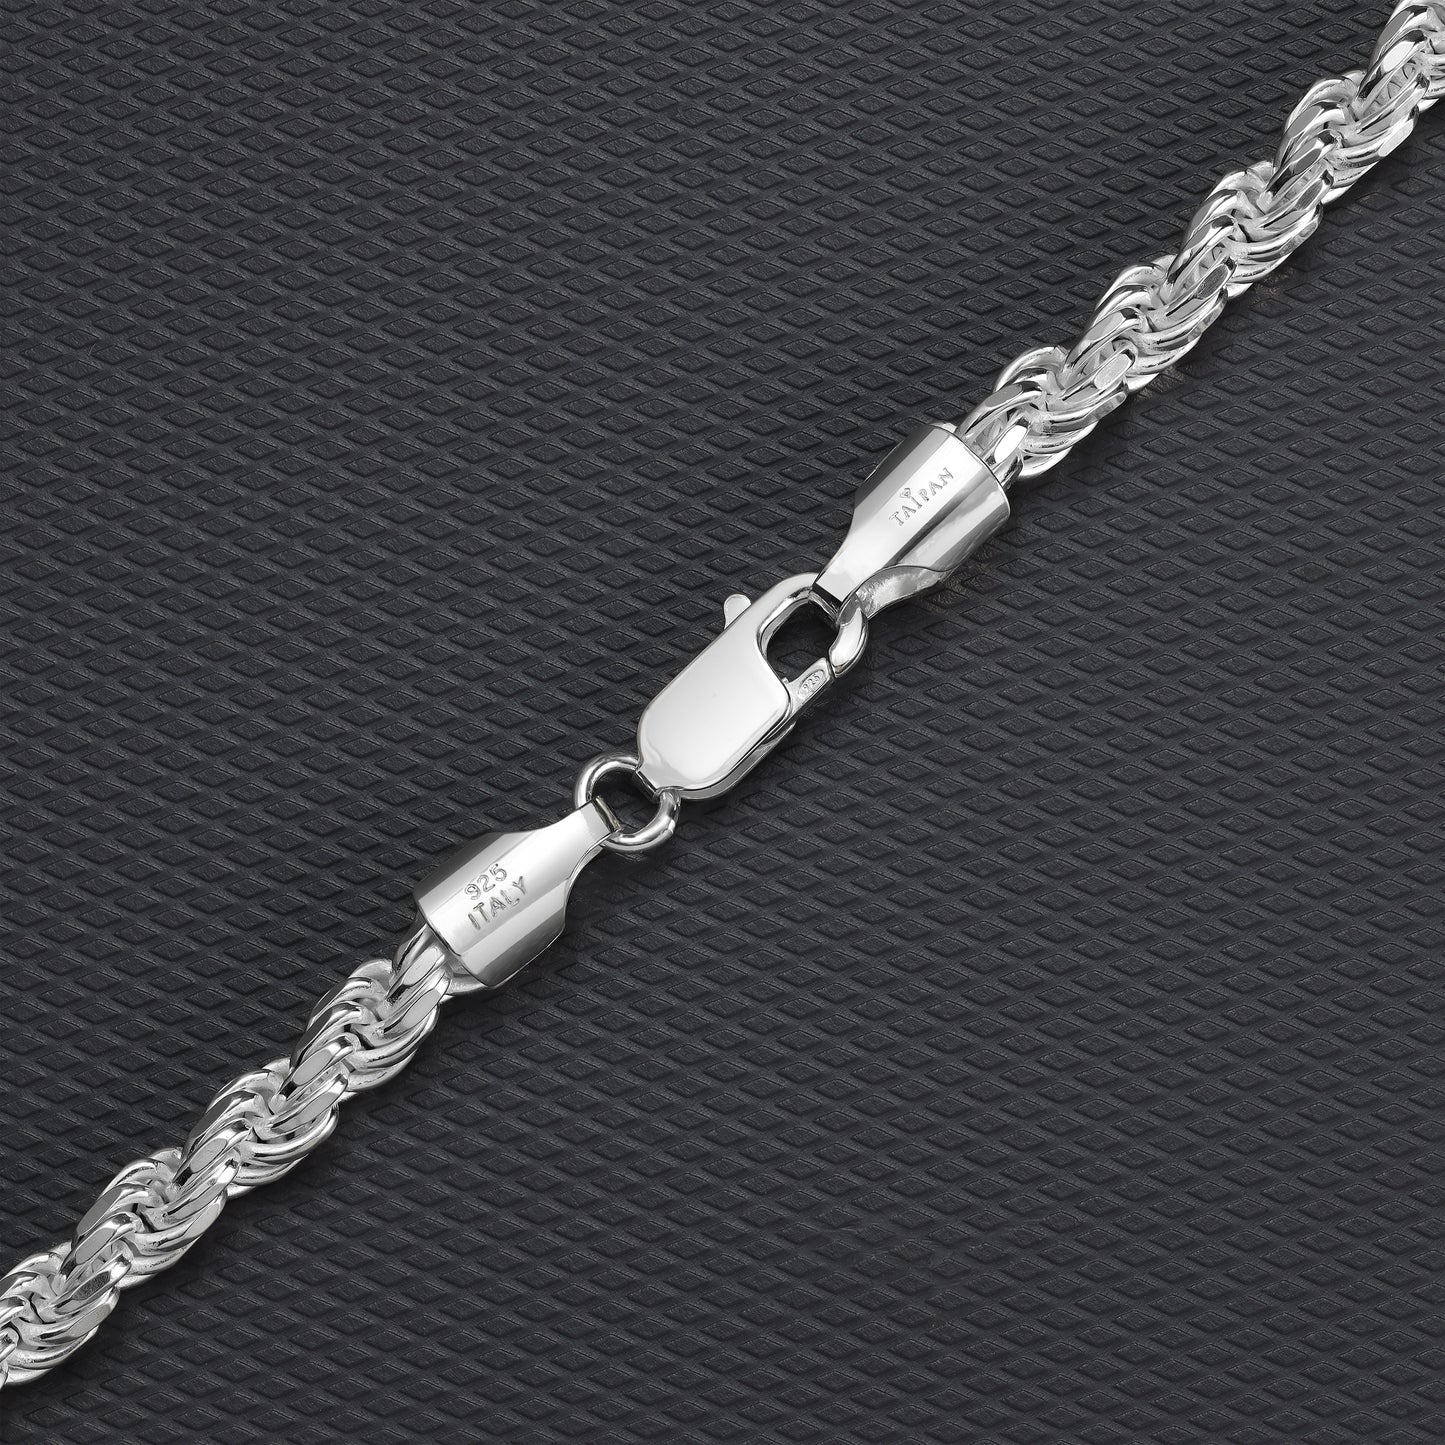 Kordelkette Rope Chain 5mm breit 55cm lang massiv 925 Sterling Silber (K1026)